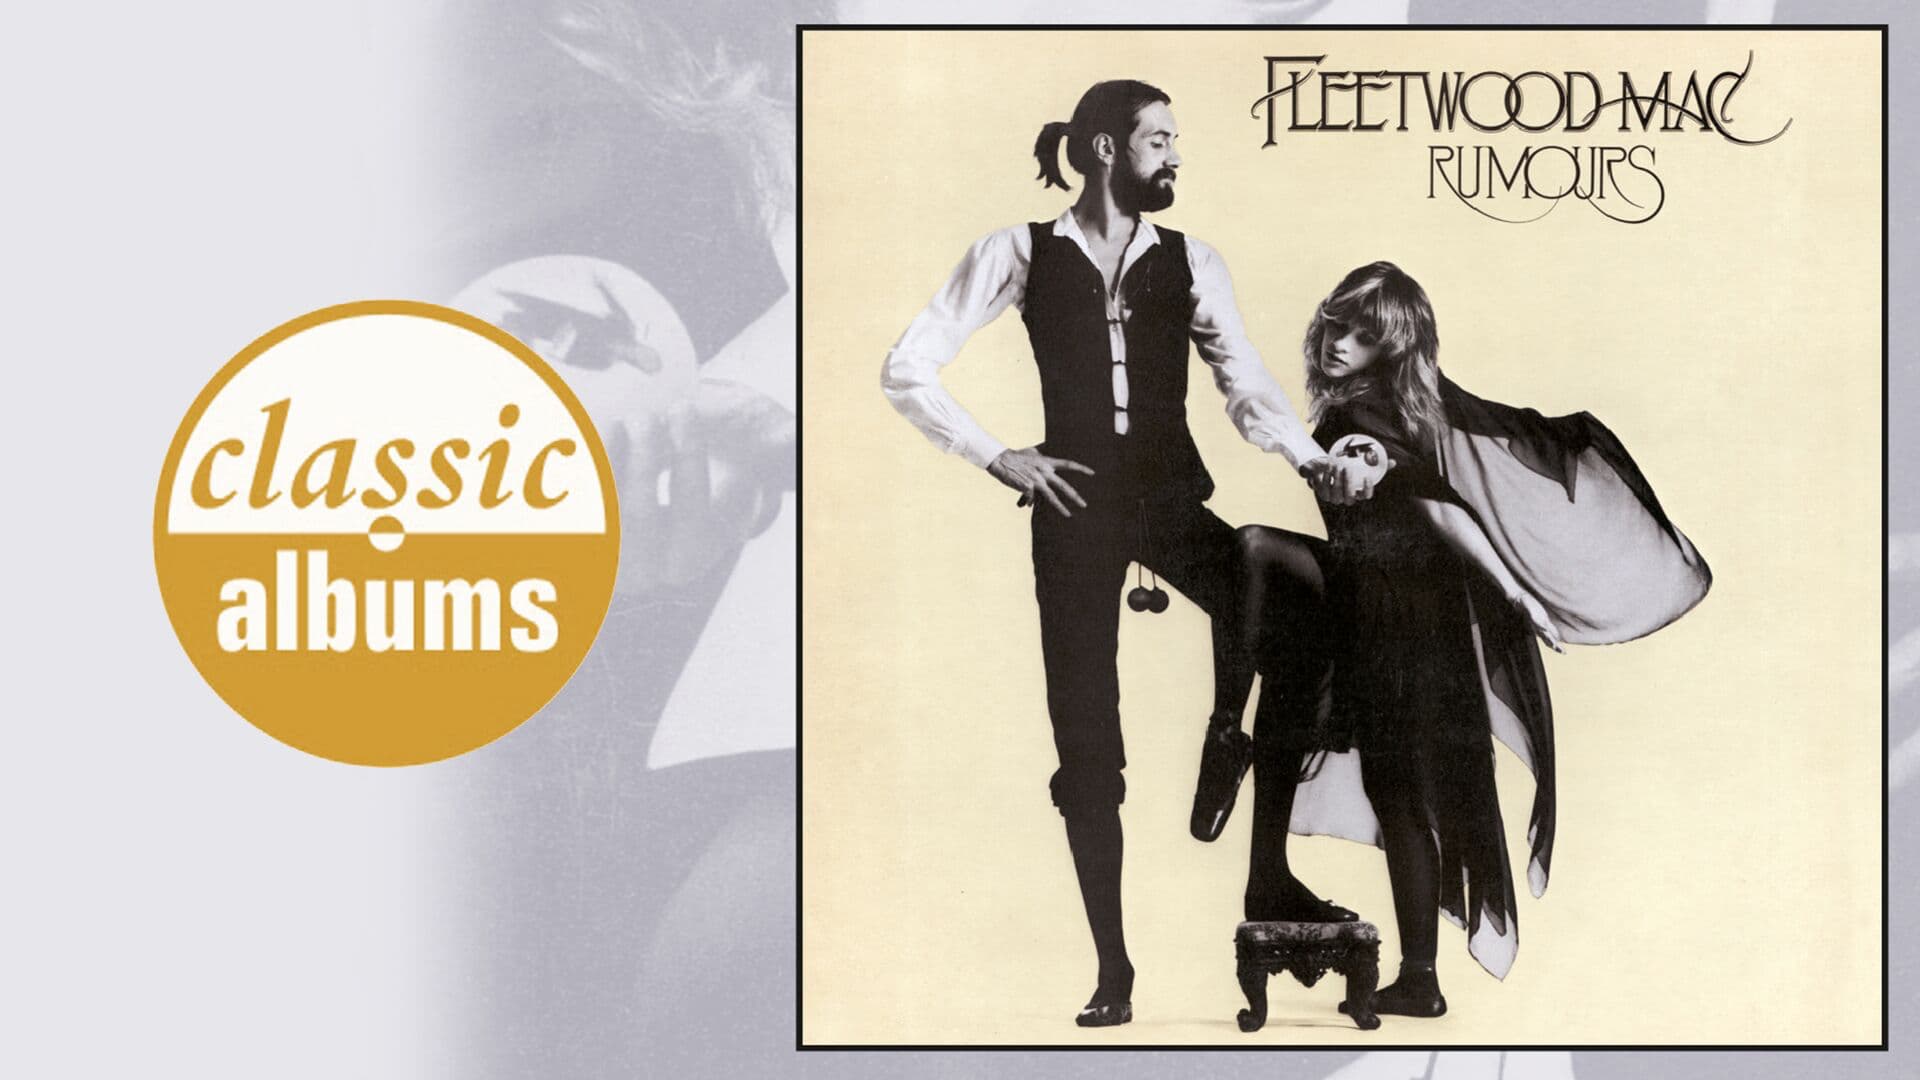 Fleetwood Mac - Rumours, Releases